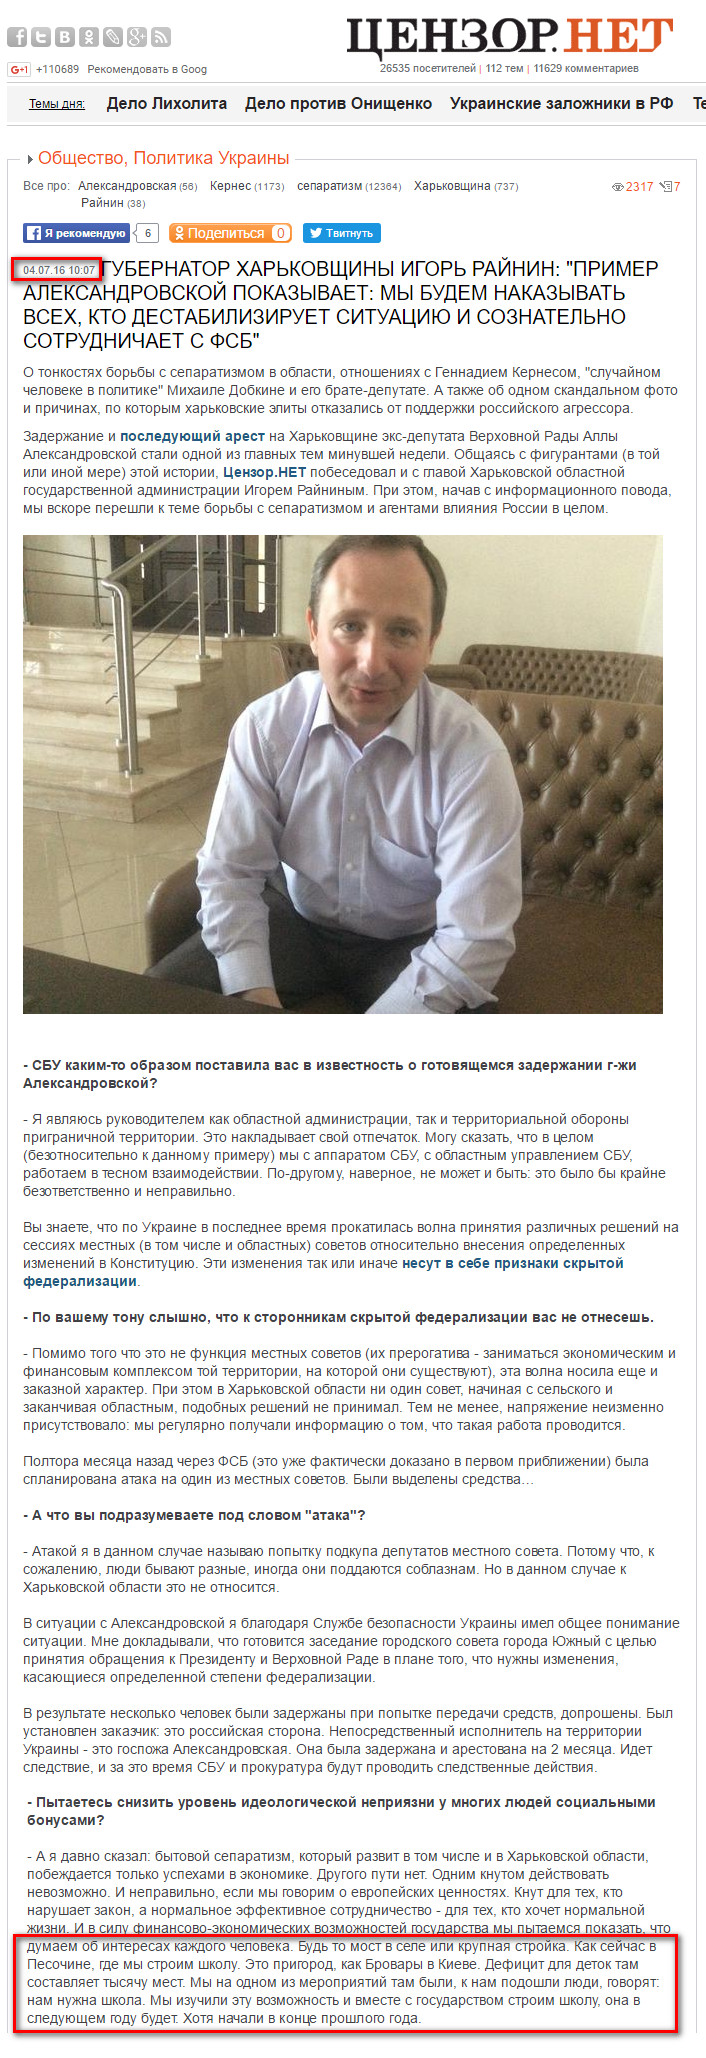 http://censor.net.ua/resonance/395875/gubernator_harkovschiny_igor_rayinin_primer_aleksandrovskoyi_pokazyvaet_my_budem_nakazyvat_vseh_kto